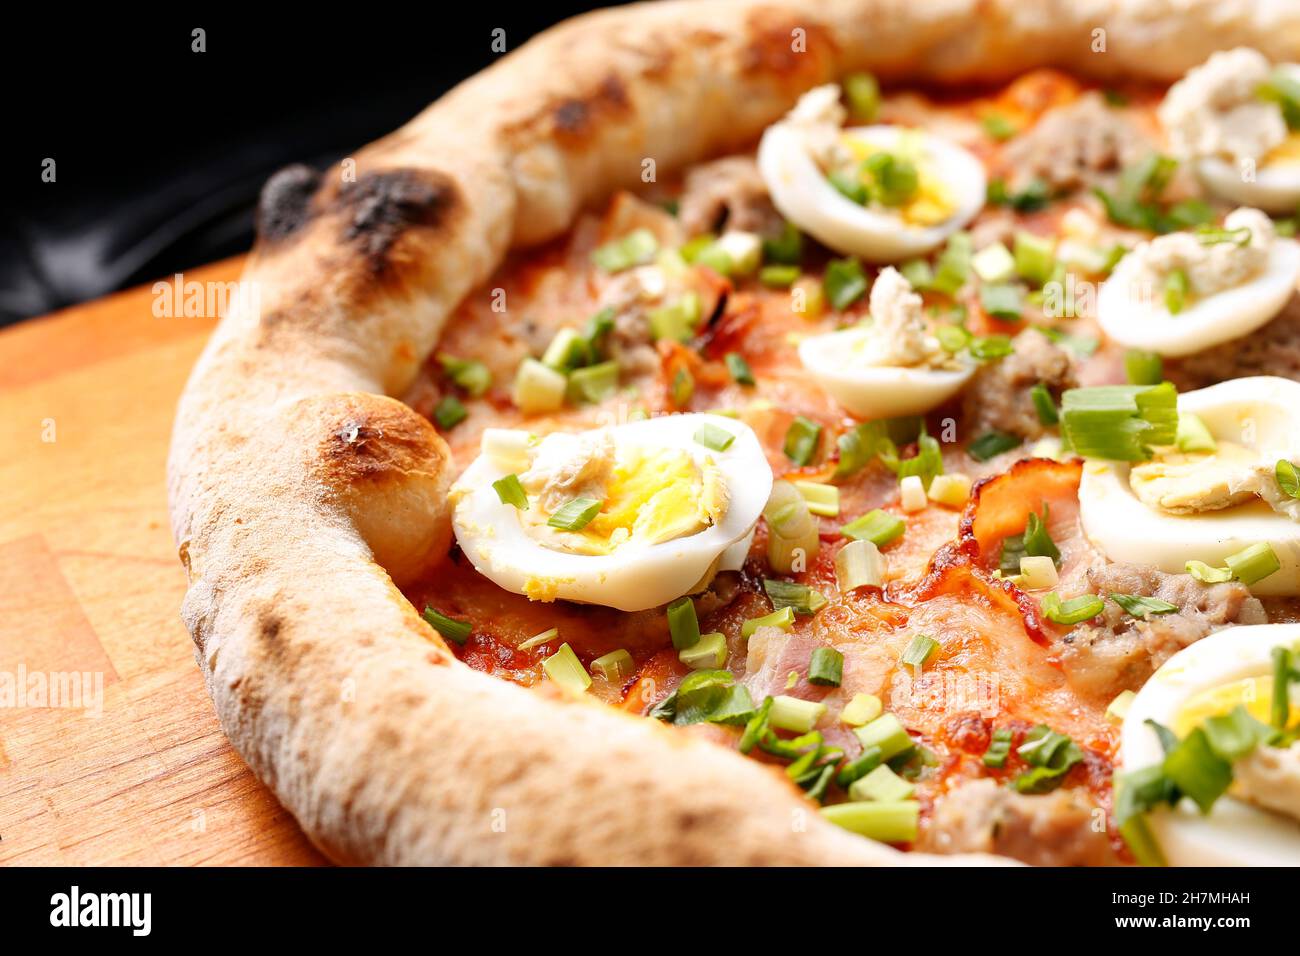 Pizza au bacon, aux œufs et à la ciboulette verte.Un délicieux plat.photographie culinaire.Suggestion de servir le plat. Banque D'Images